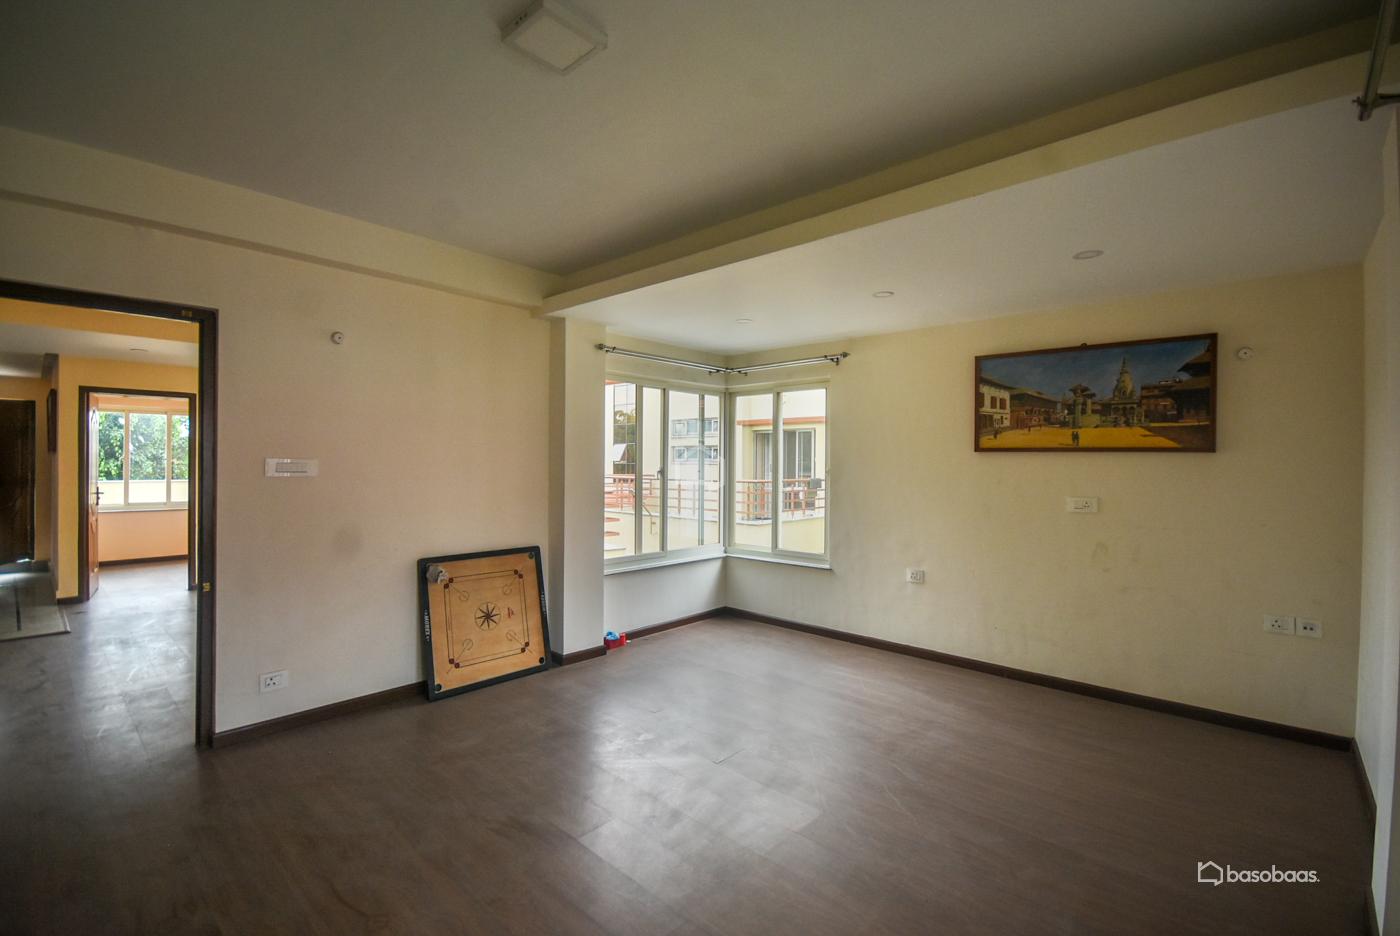 Residental : House for Rent in Lazimpat, Kathmandu Image 10